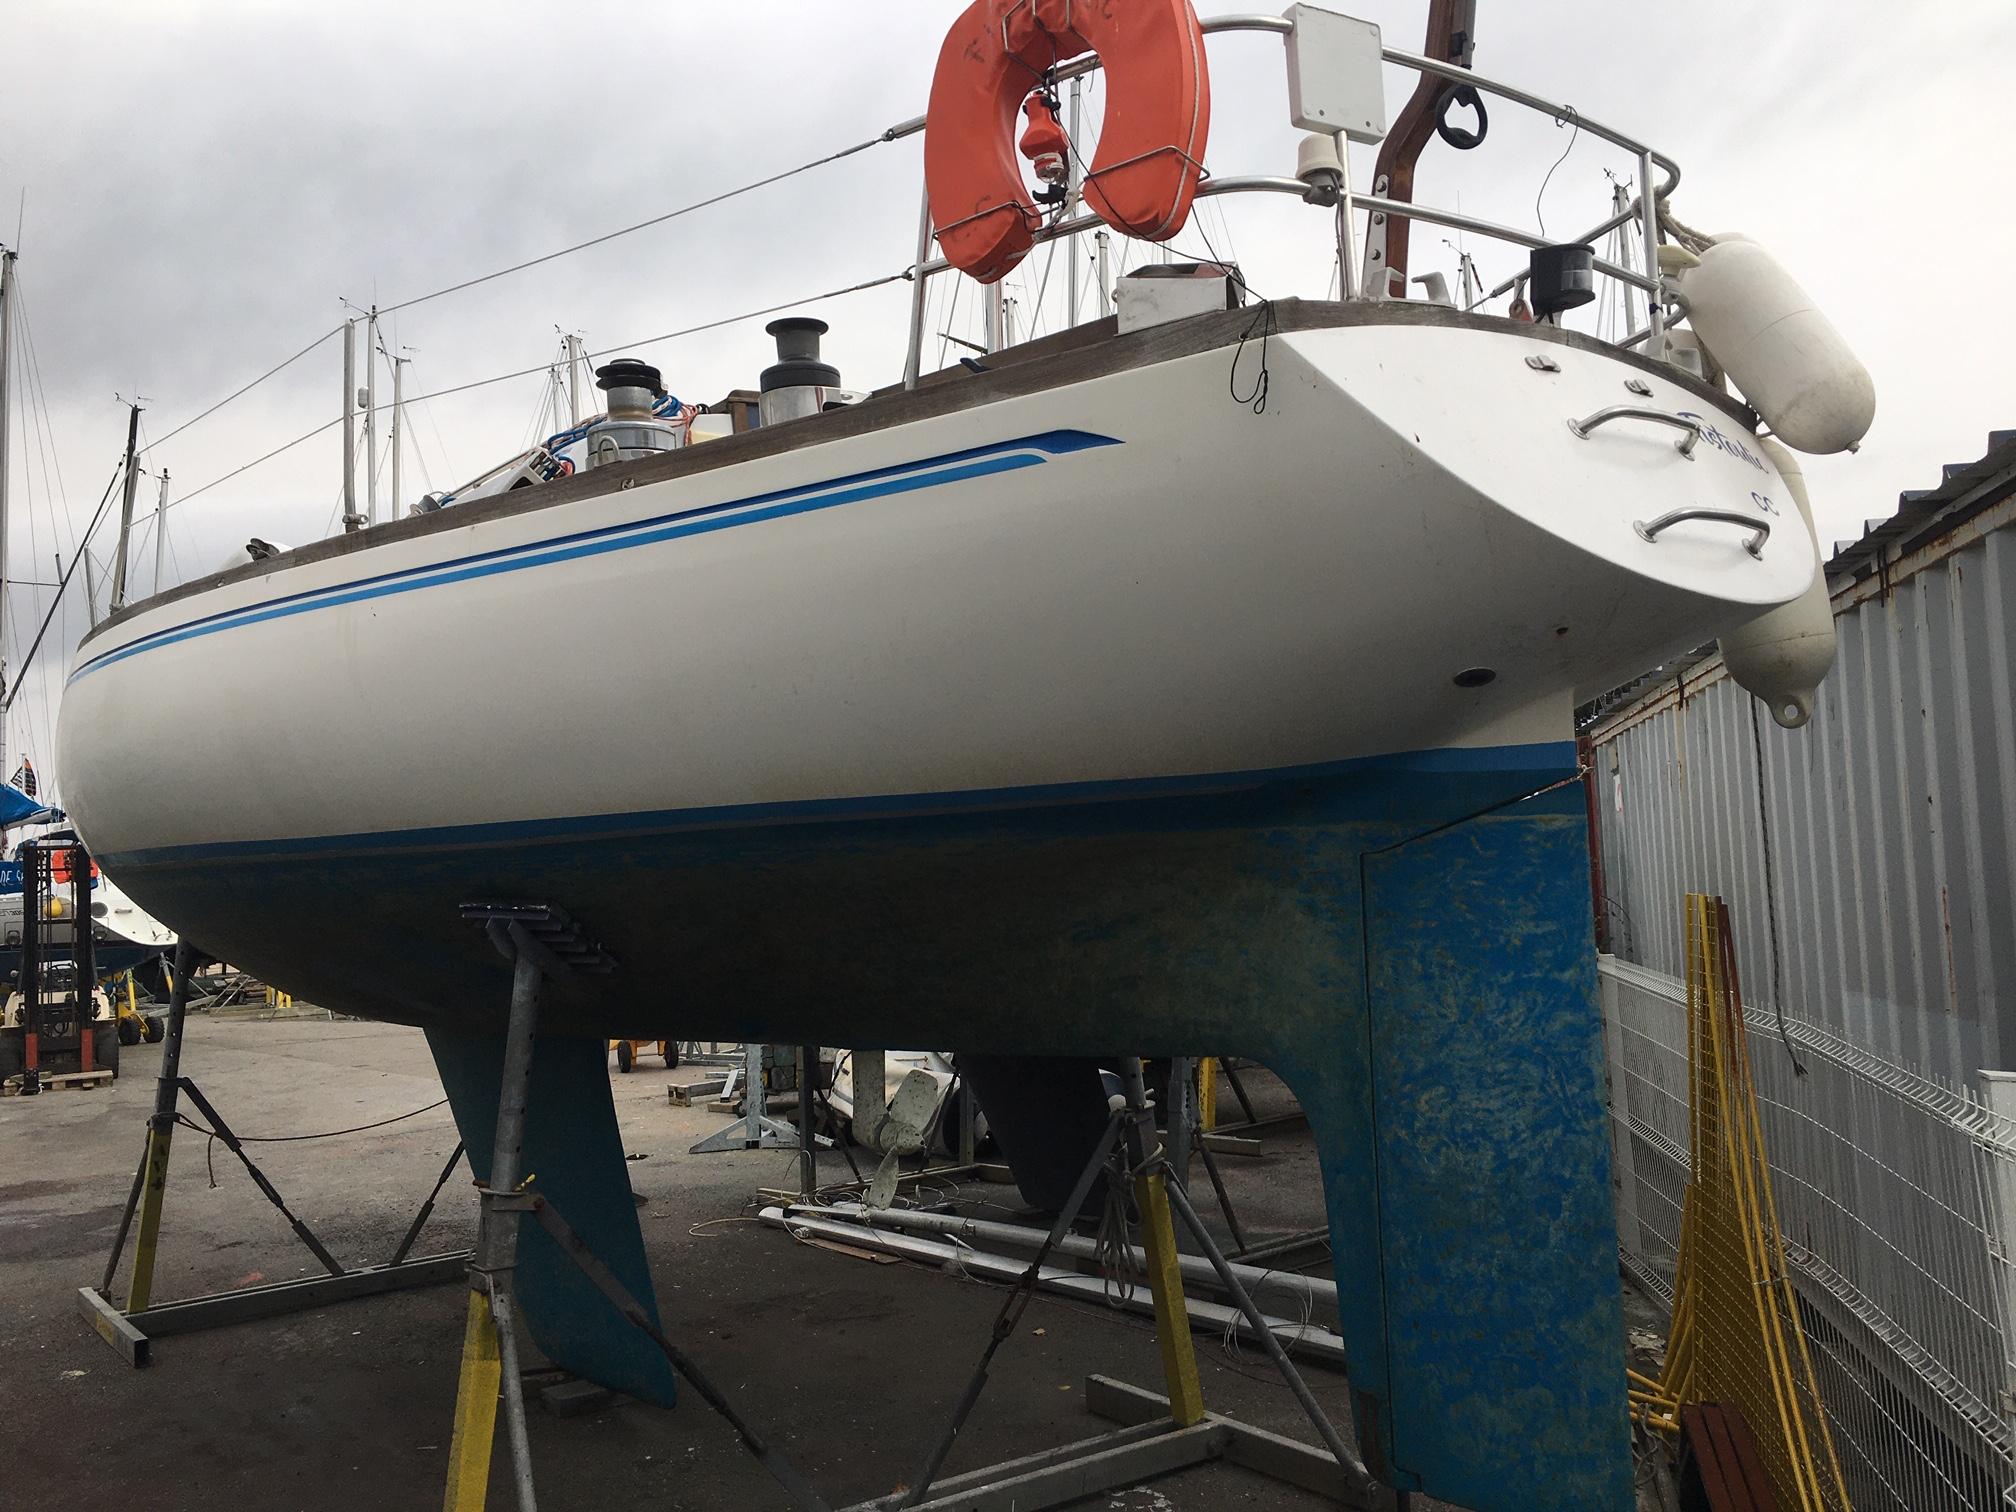 1974 carter 37 sailboat